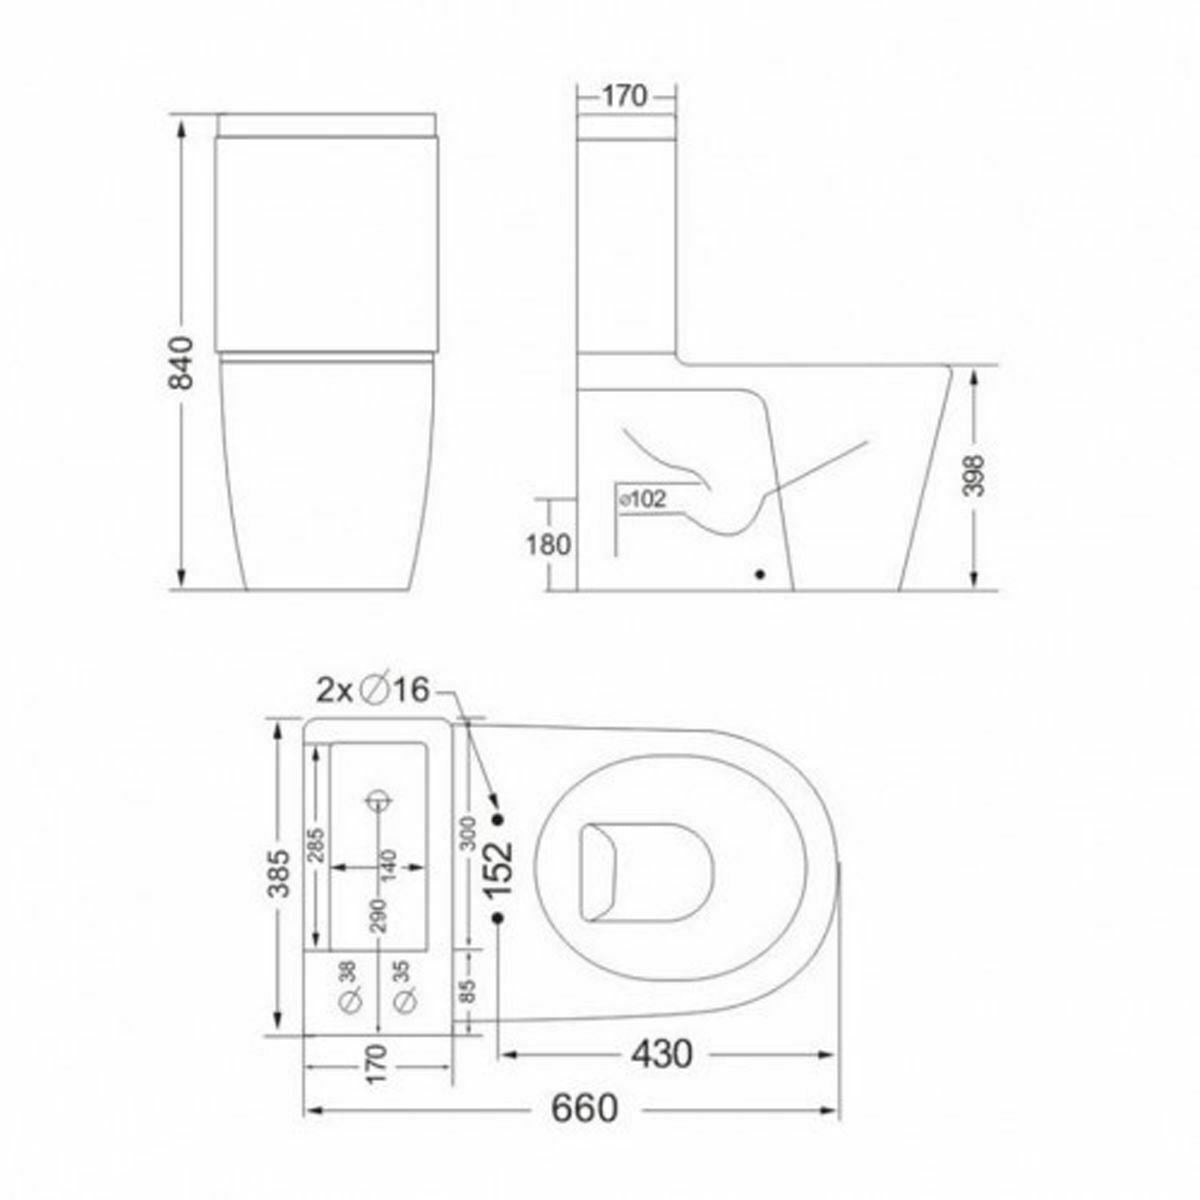 Allscot 2 in 1 Compact Basin Close Coupled Toilet & Studio Mono Basin Mixer